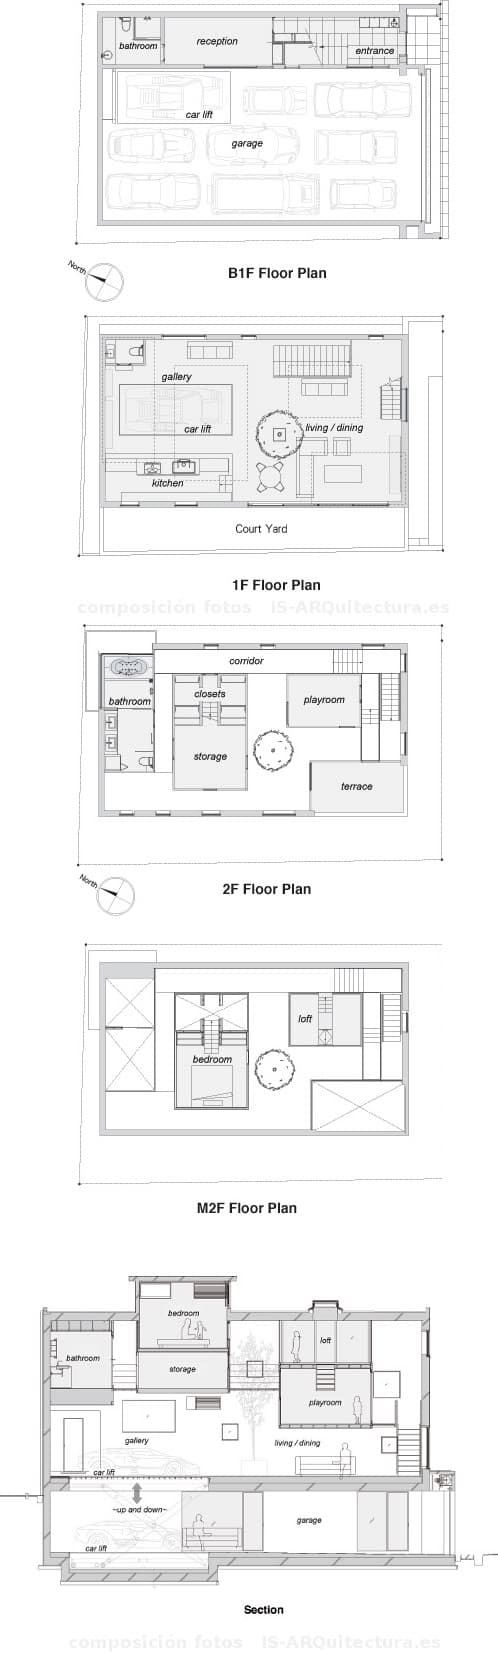 planos y seccion casa-kre